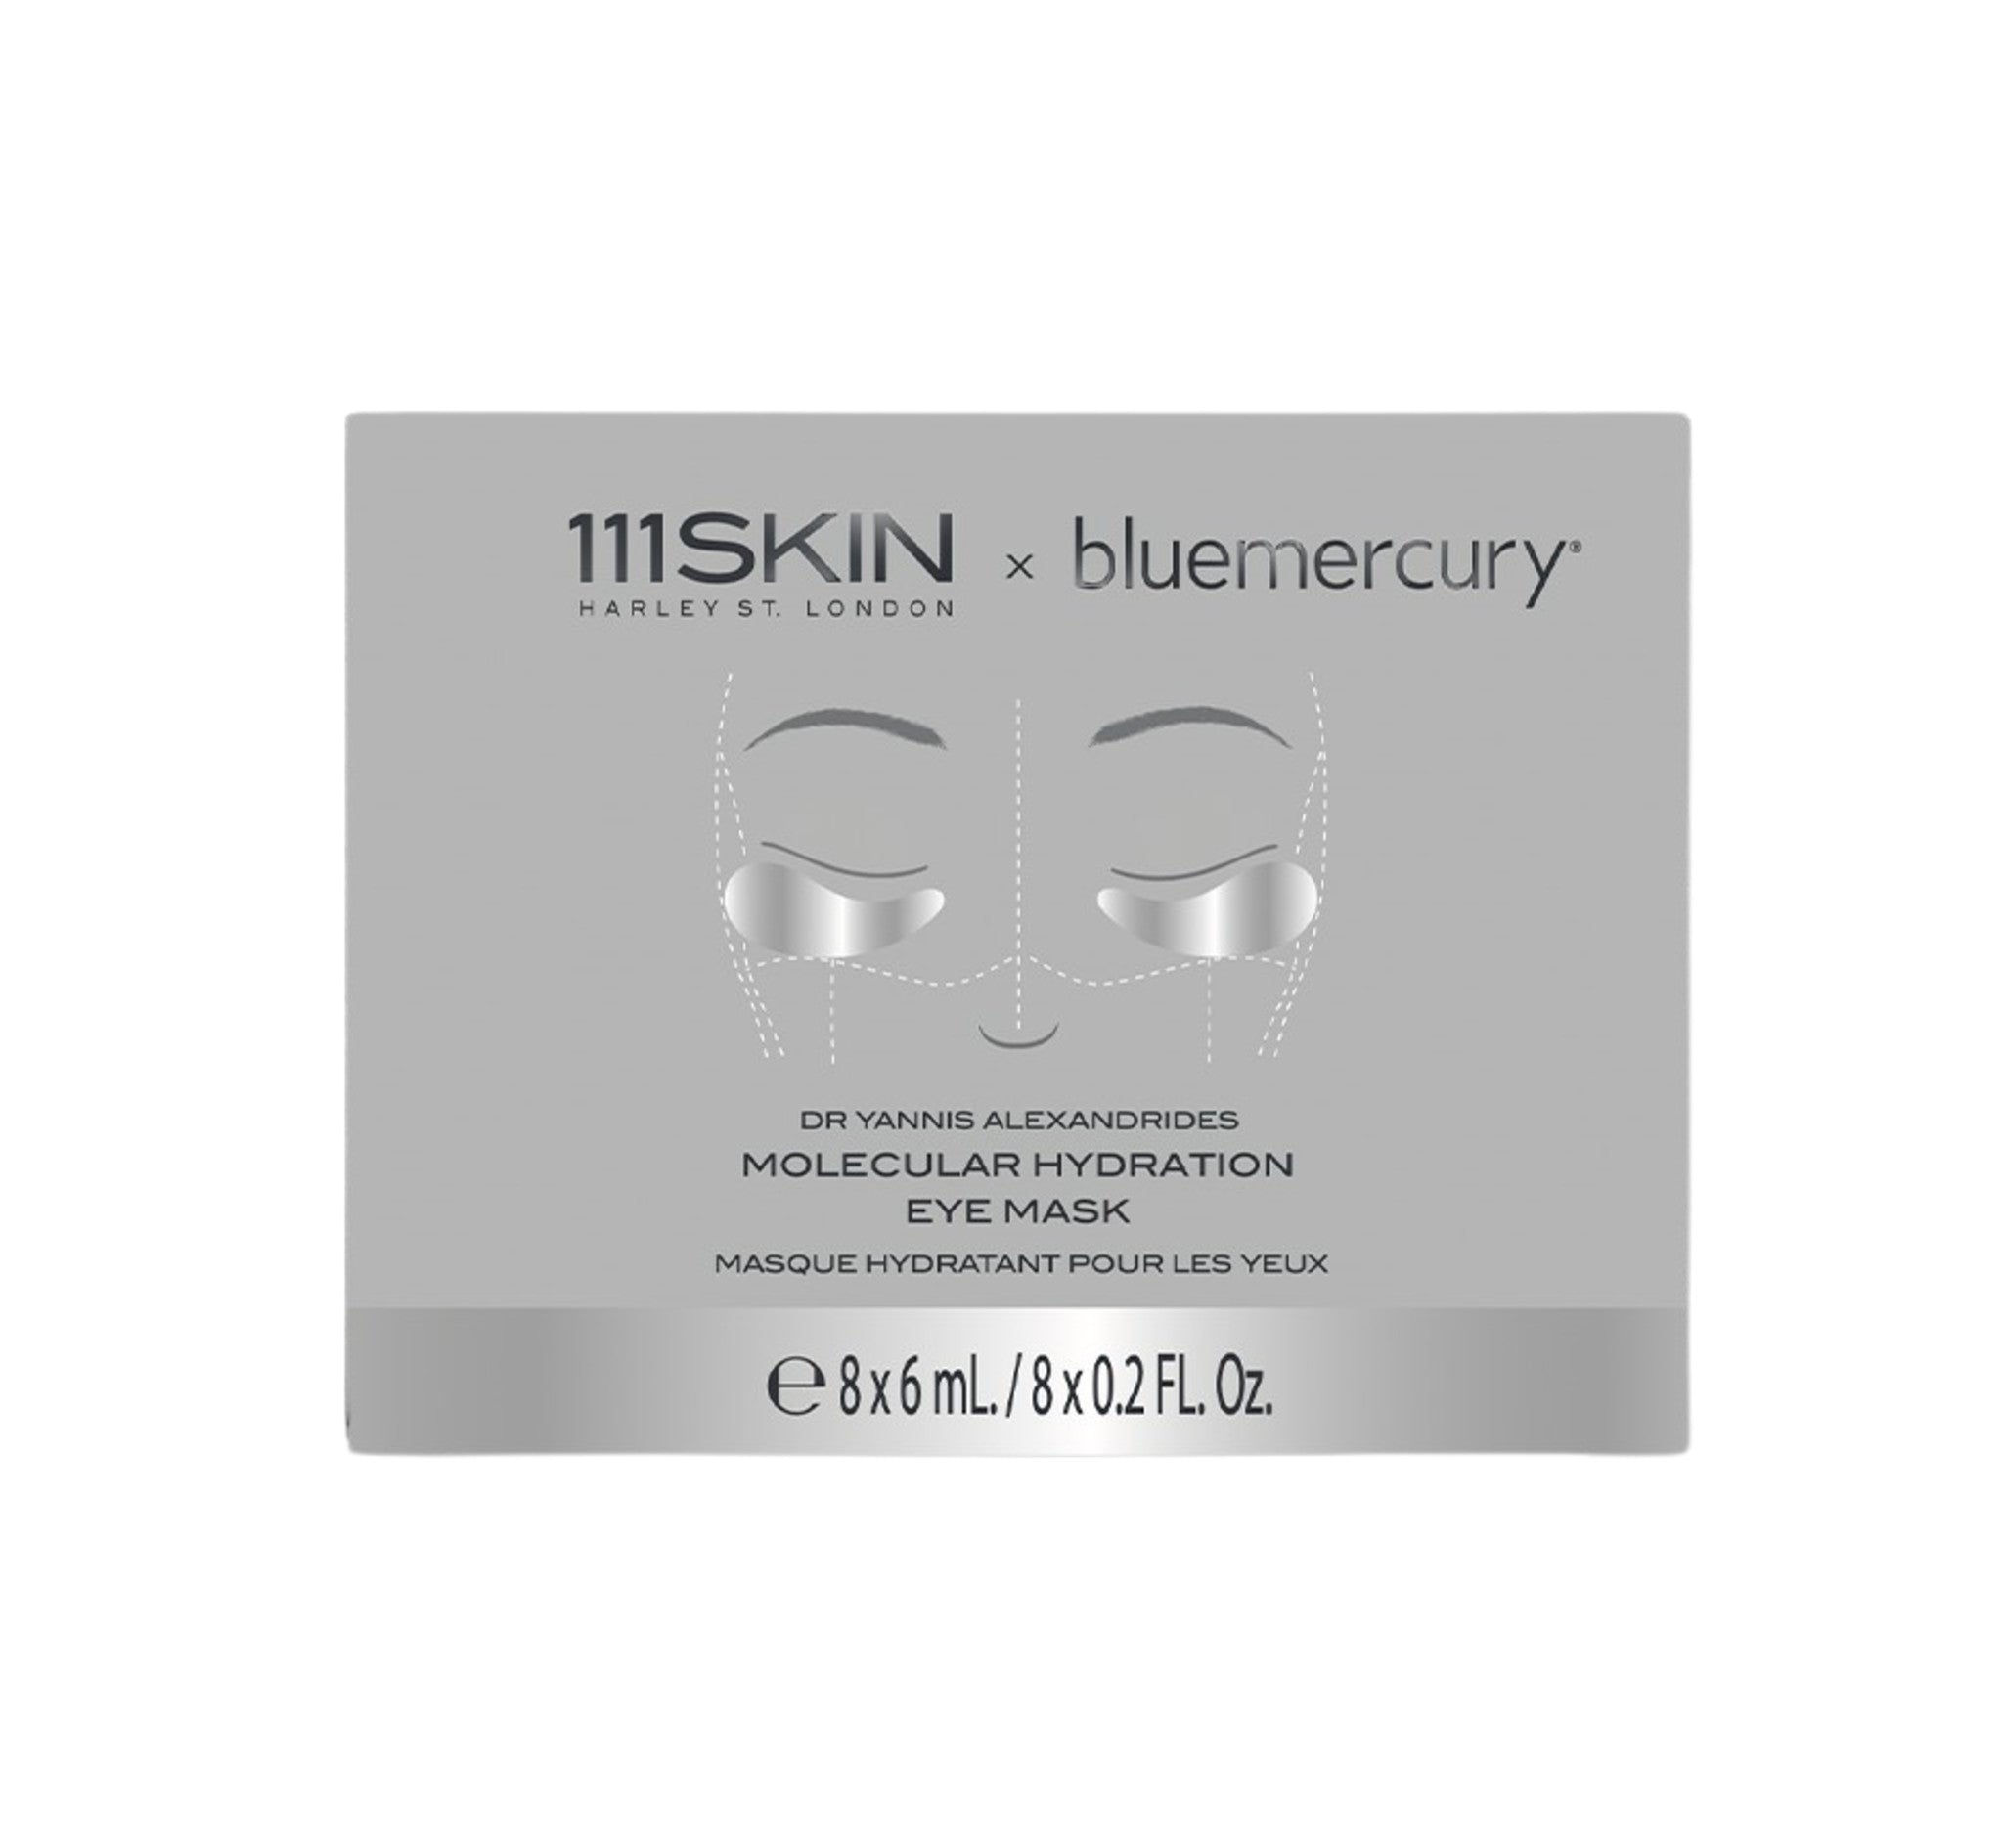 111SKIN Molecular Hydration Eye Mask main image.